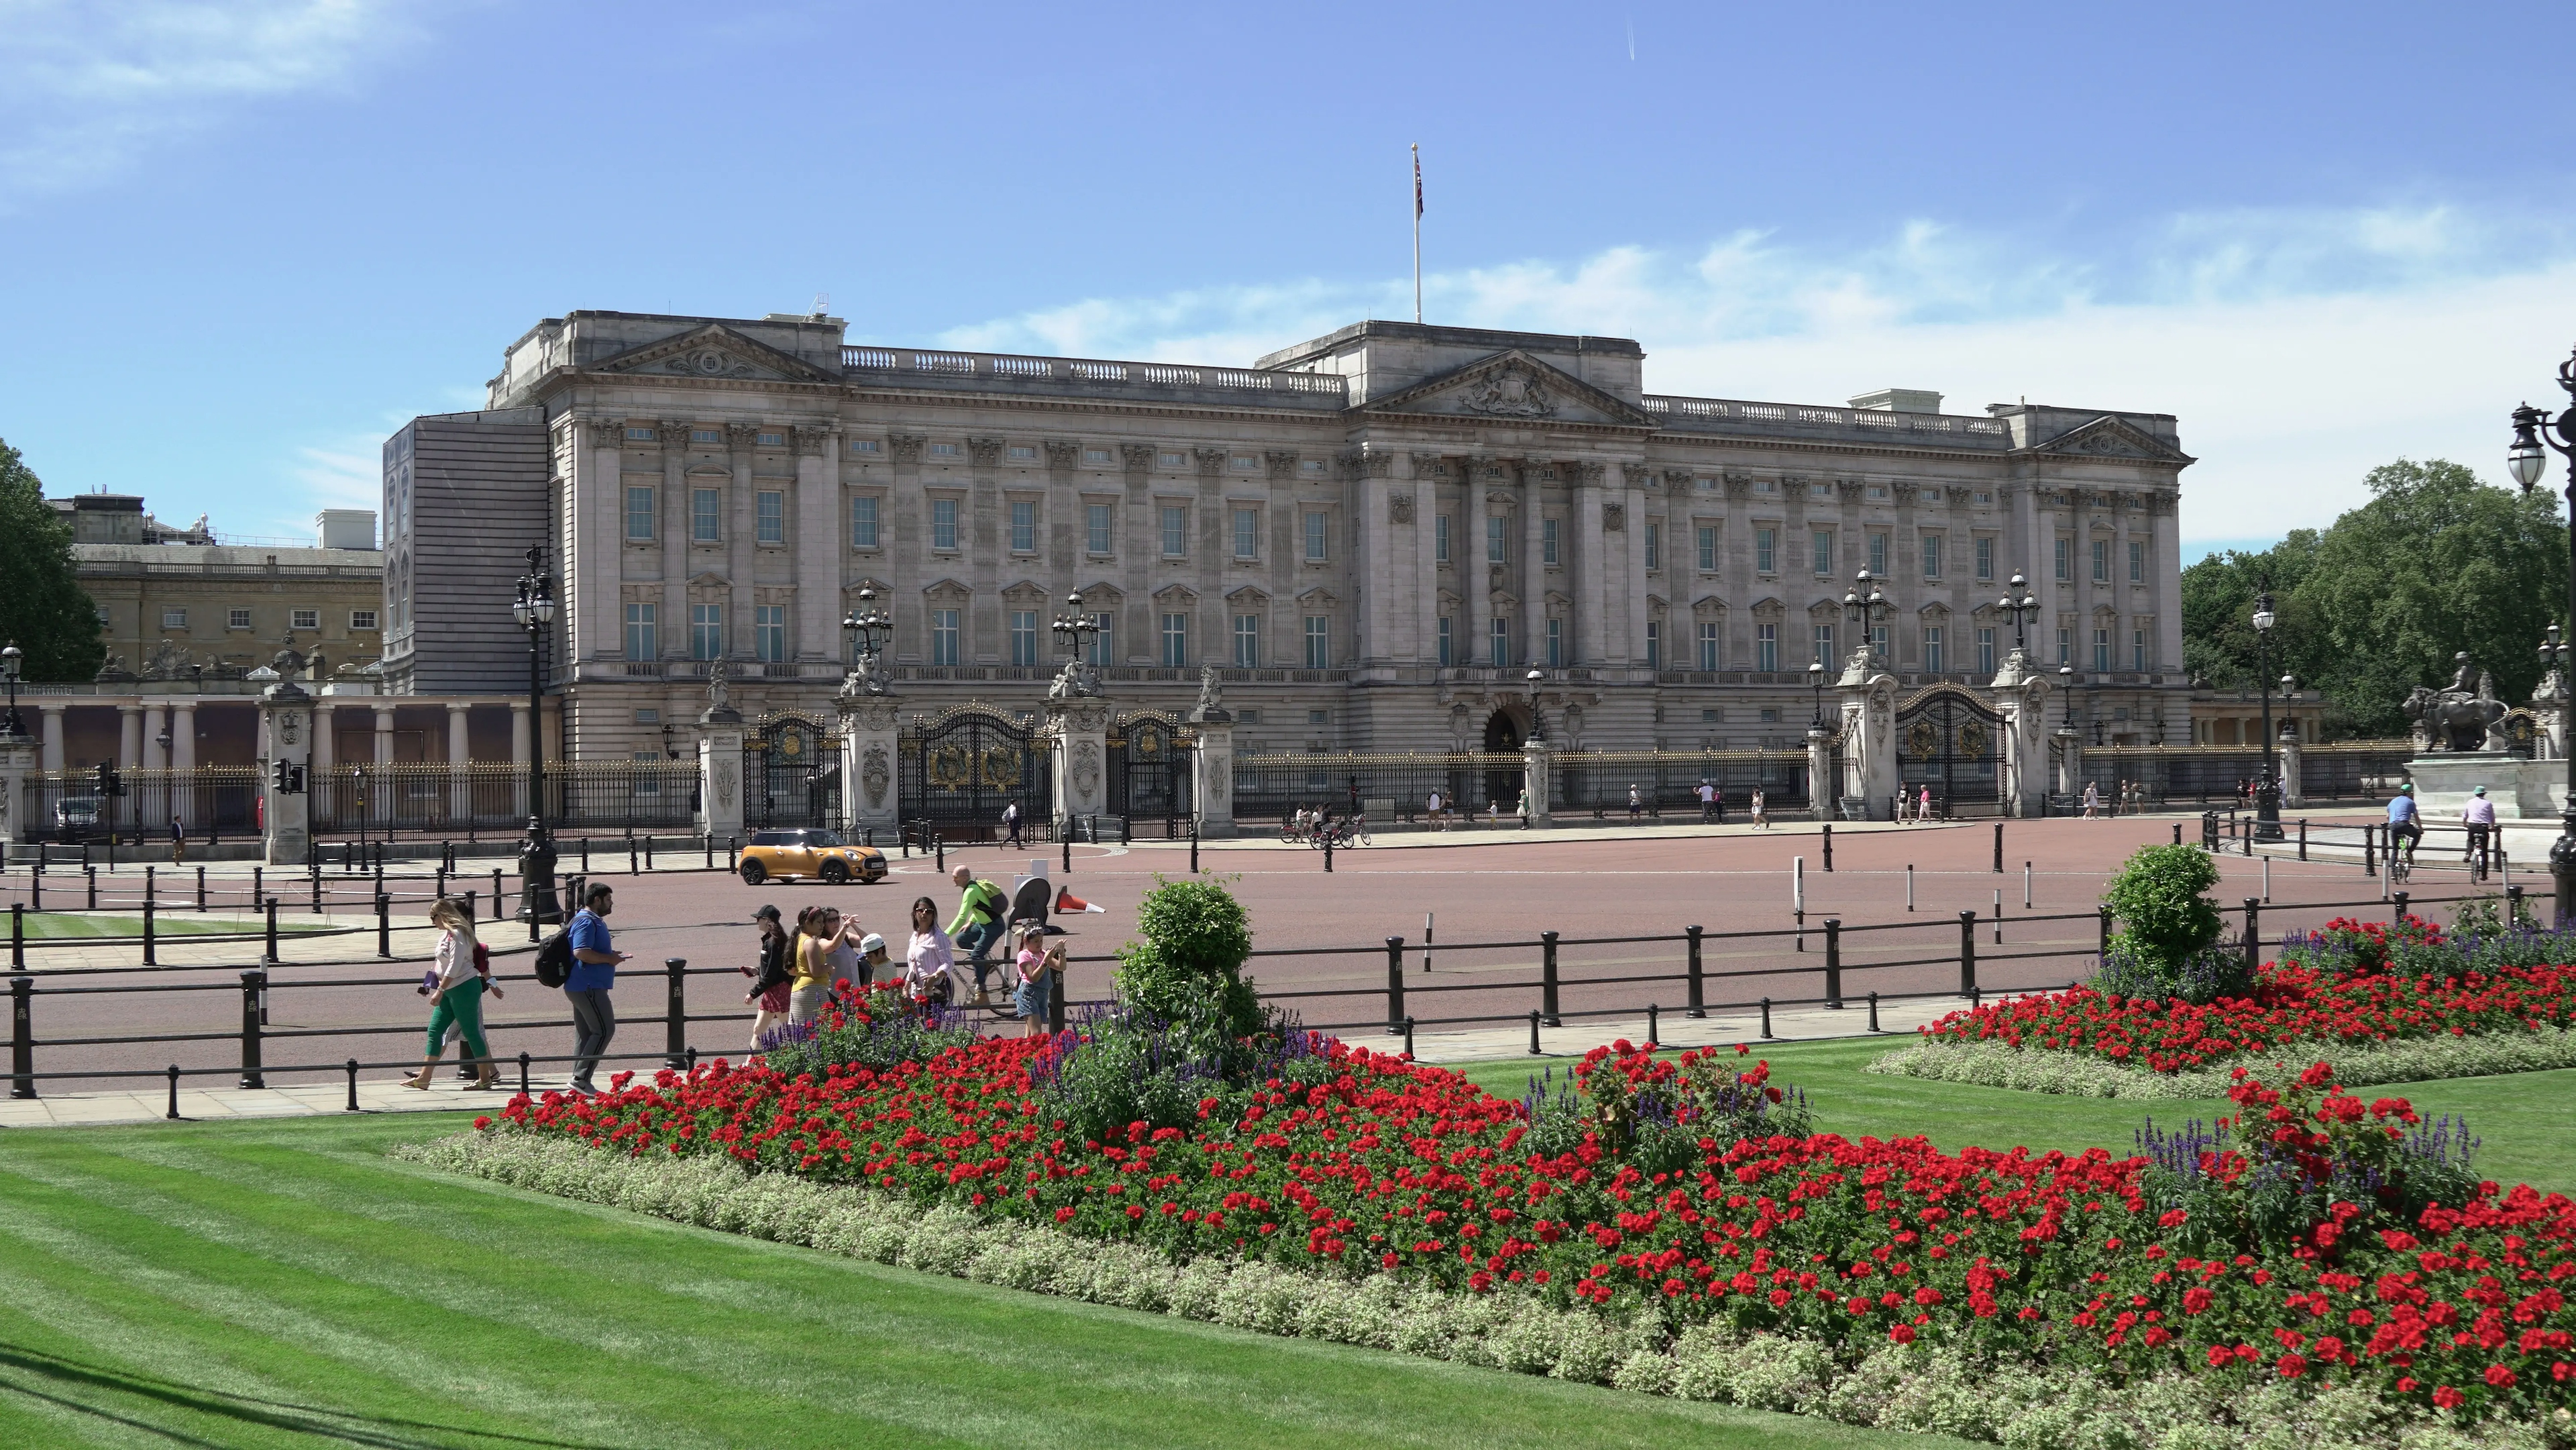 Behind The Gates of Buckingham Palace